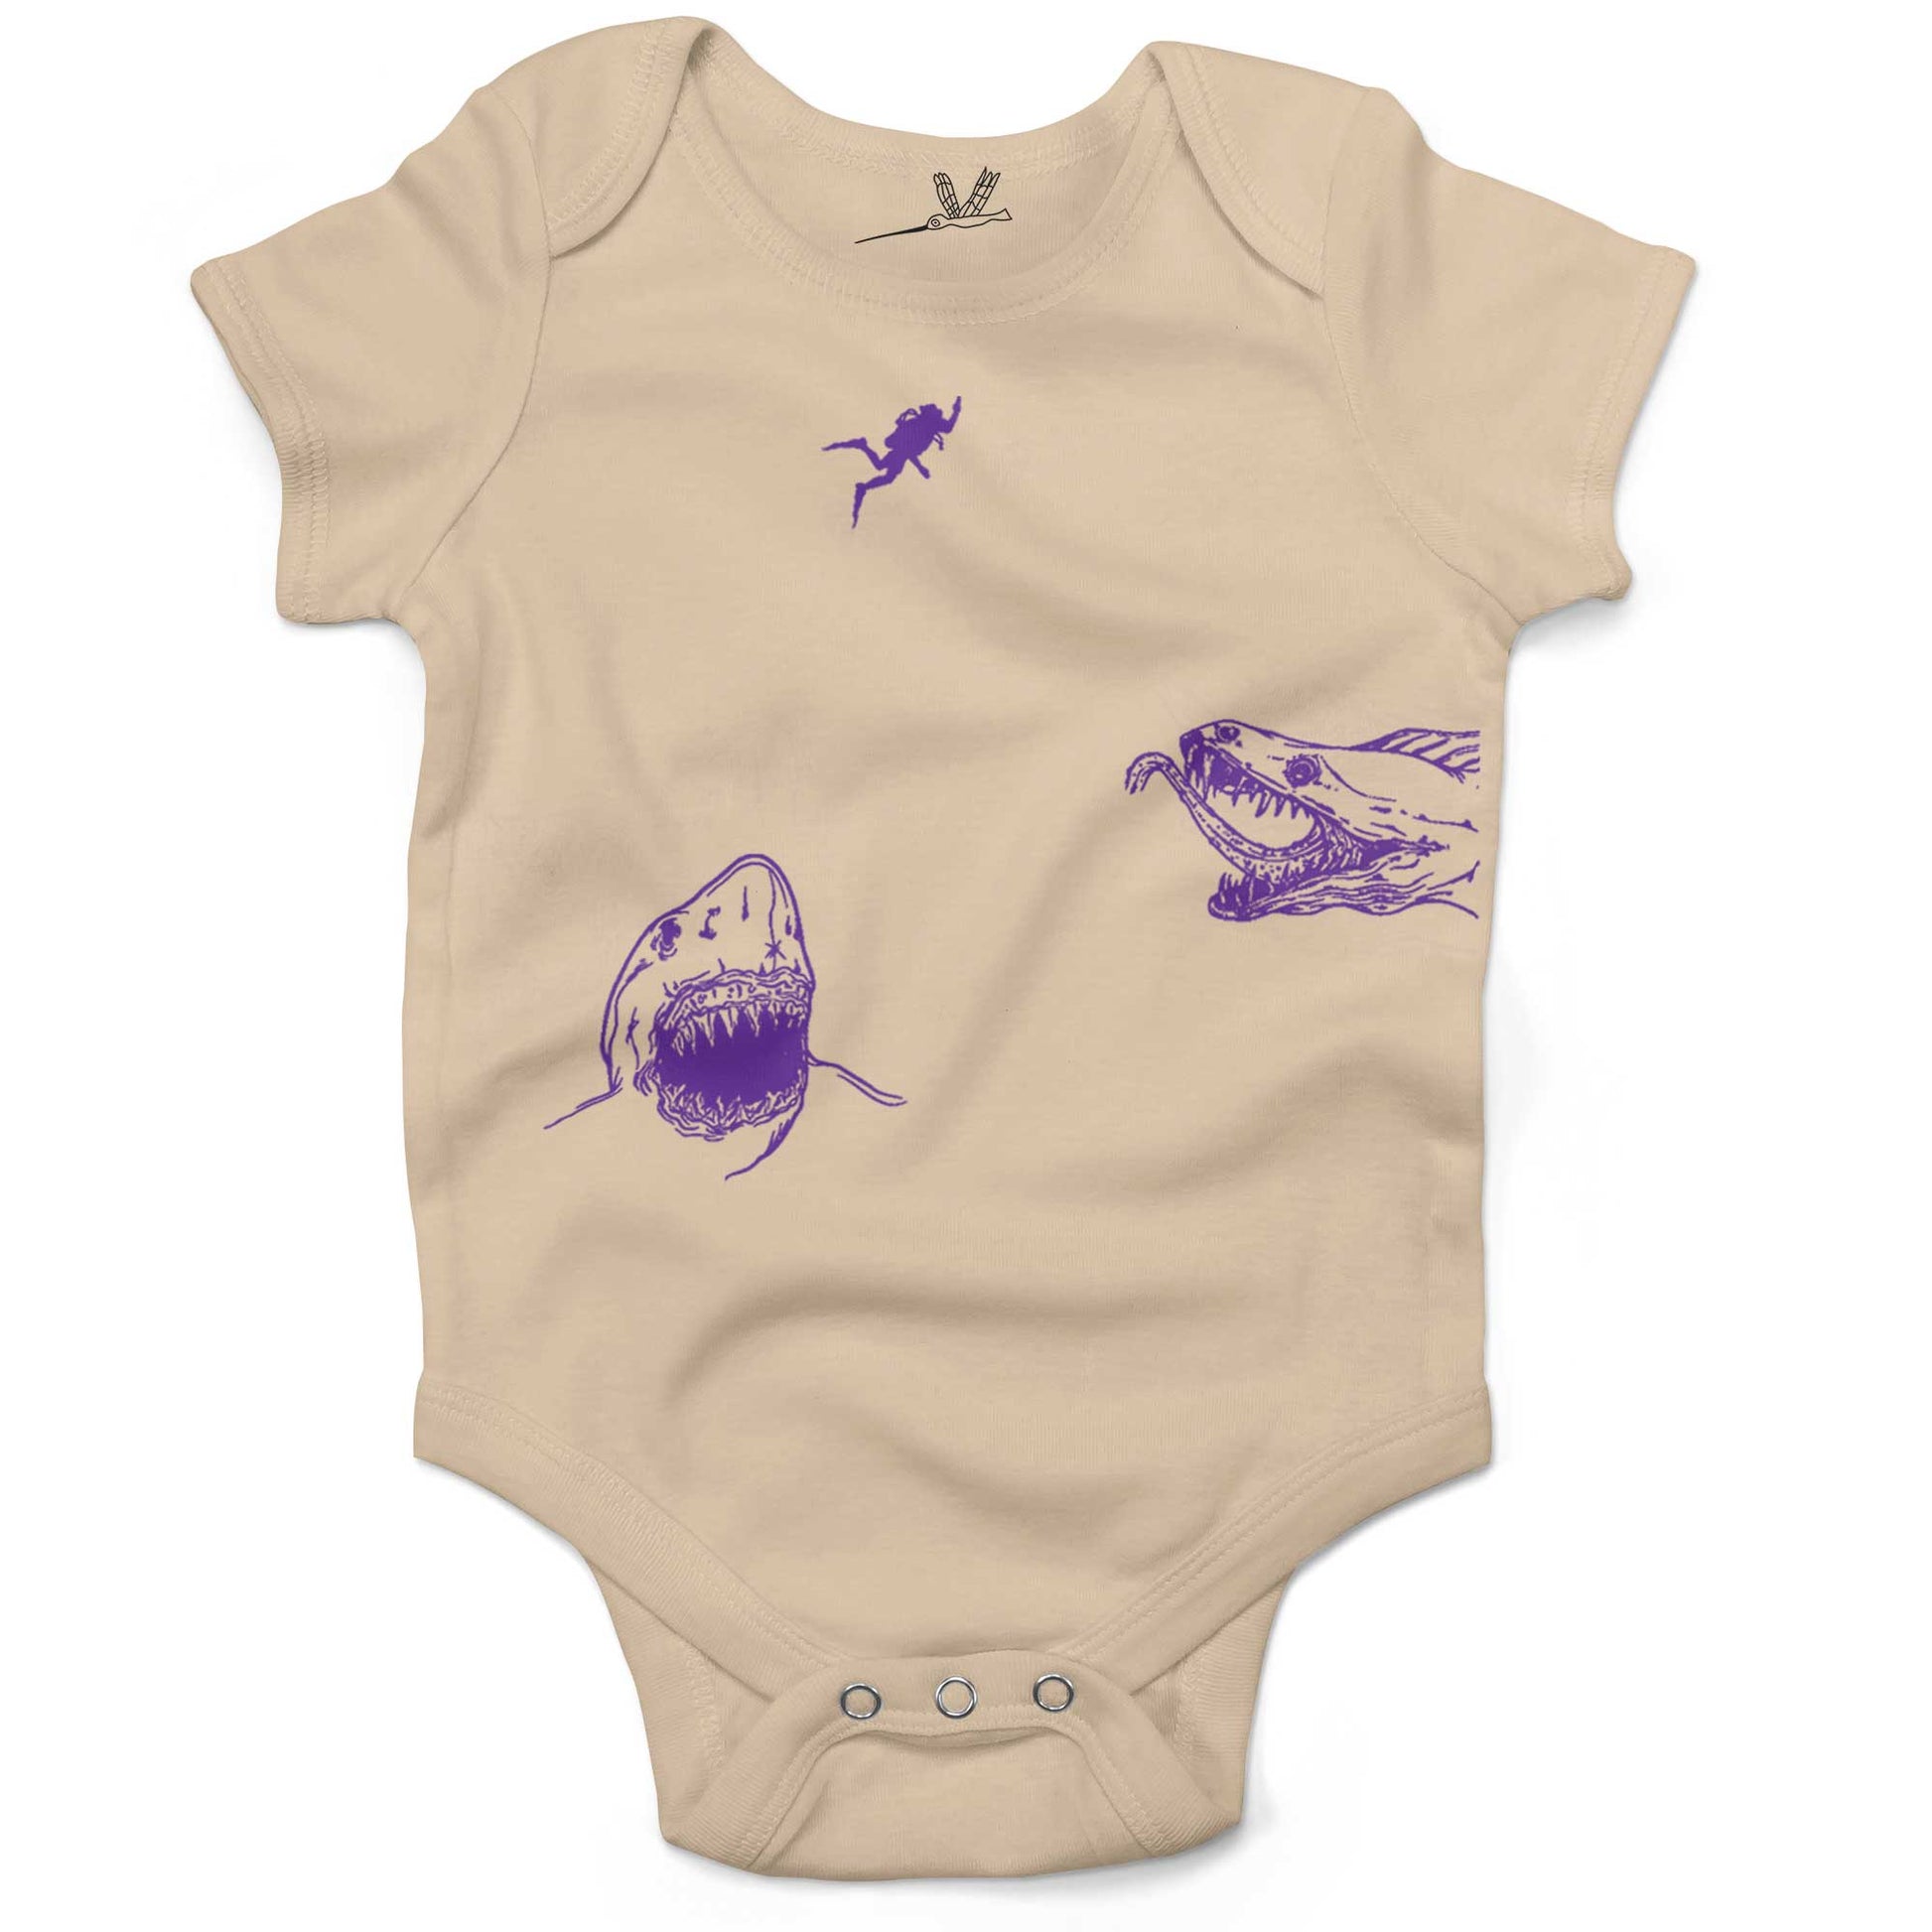 Scuba Diving Infant Bodysuit-Organic Natural-3-6 months